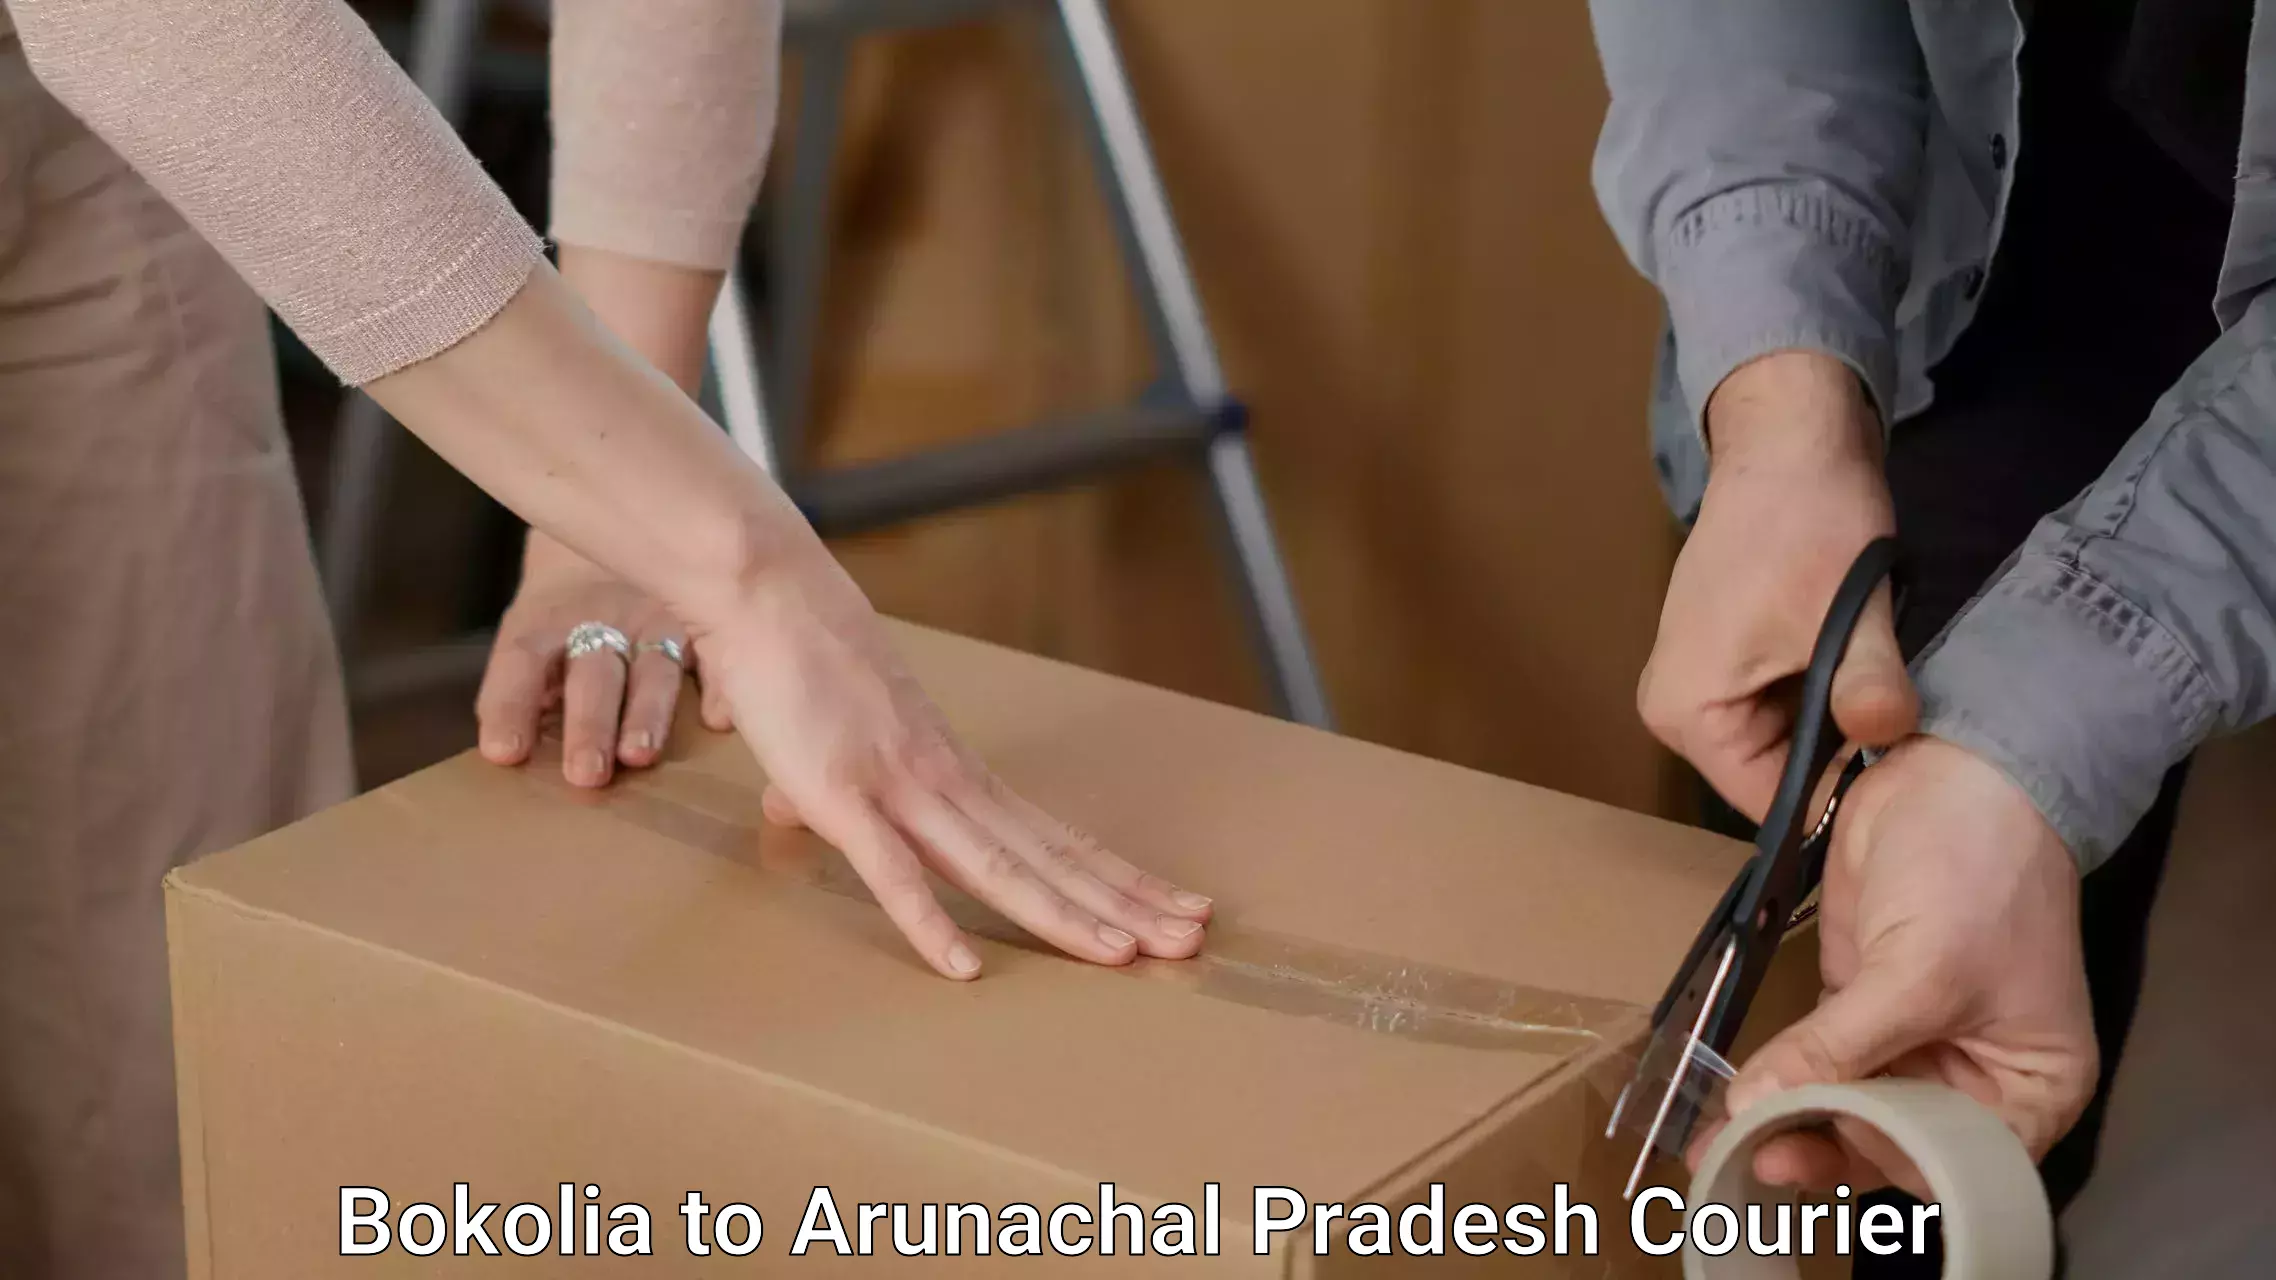 Efficient packing services in Bokolia to Arunachal Pradesh